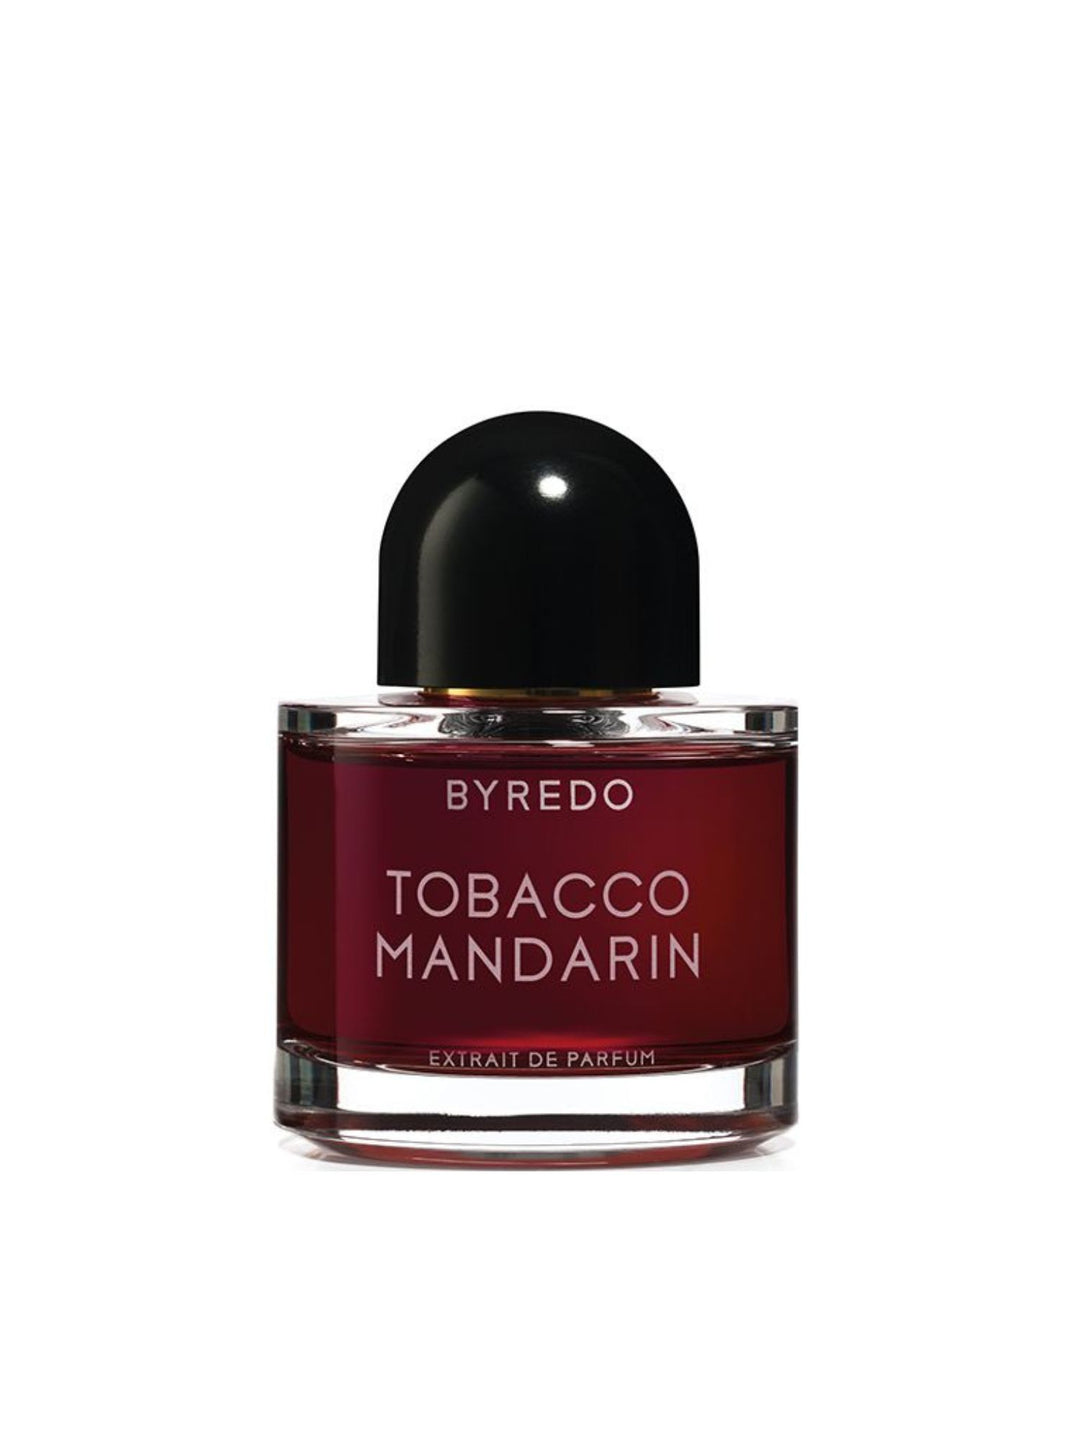 Tobacco Mandarin Extrait de Parfum 50 ml